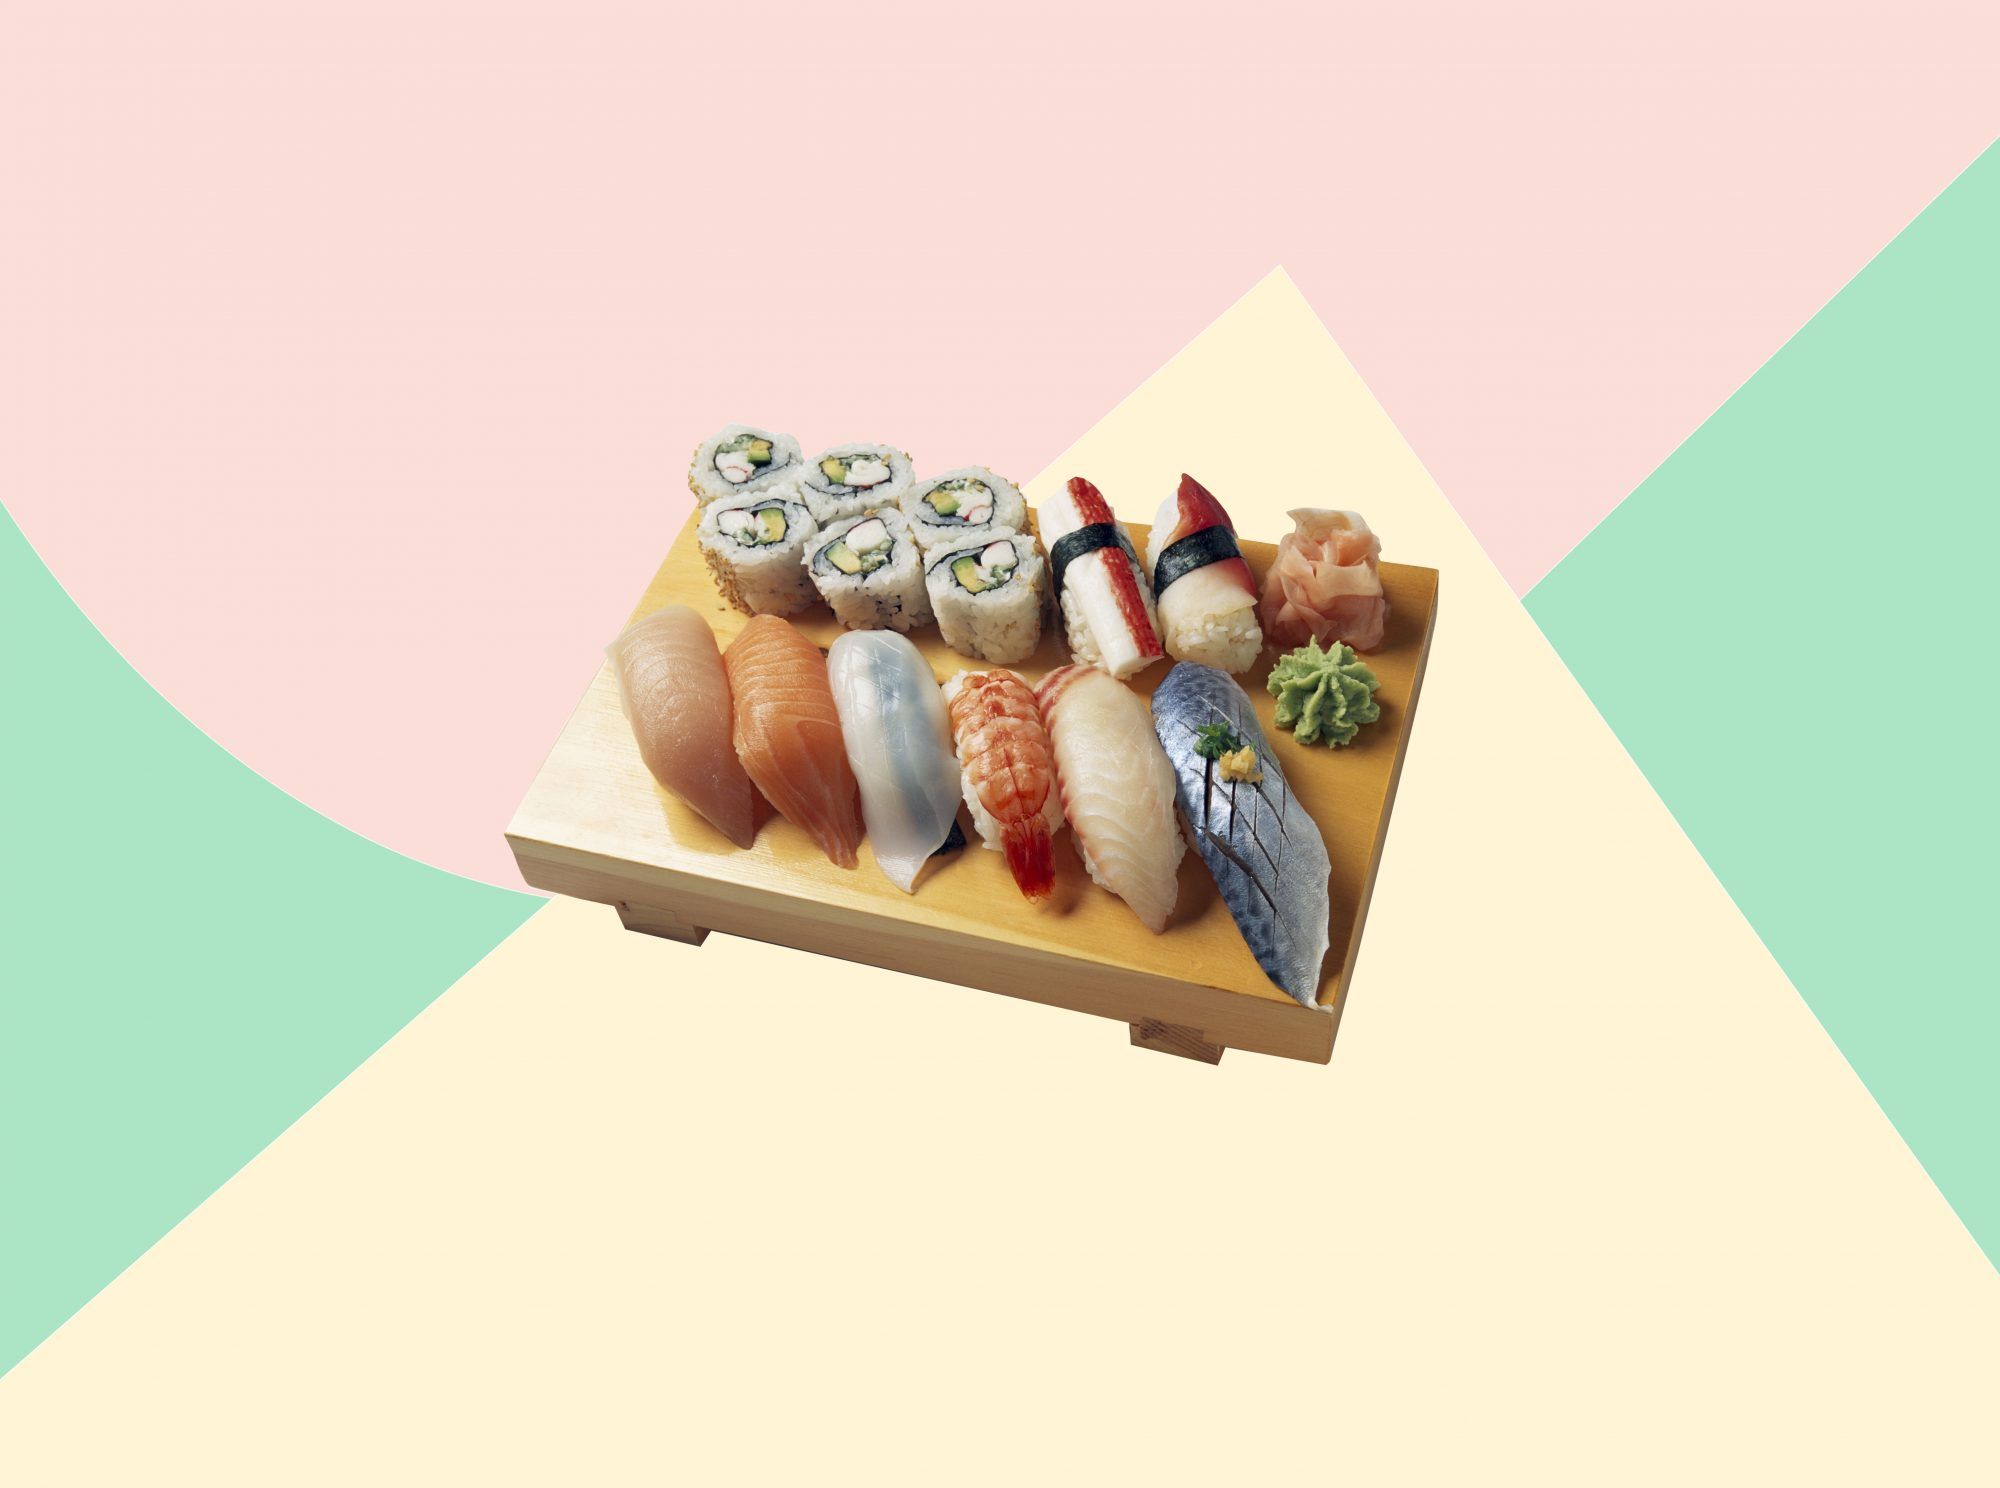 Detta är det bästa och enda sättet att äta sushi, enligt en känd sushikock